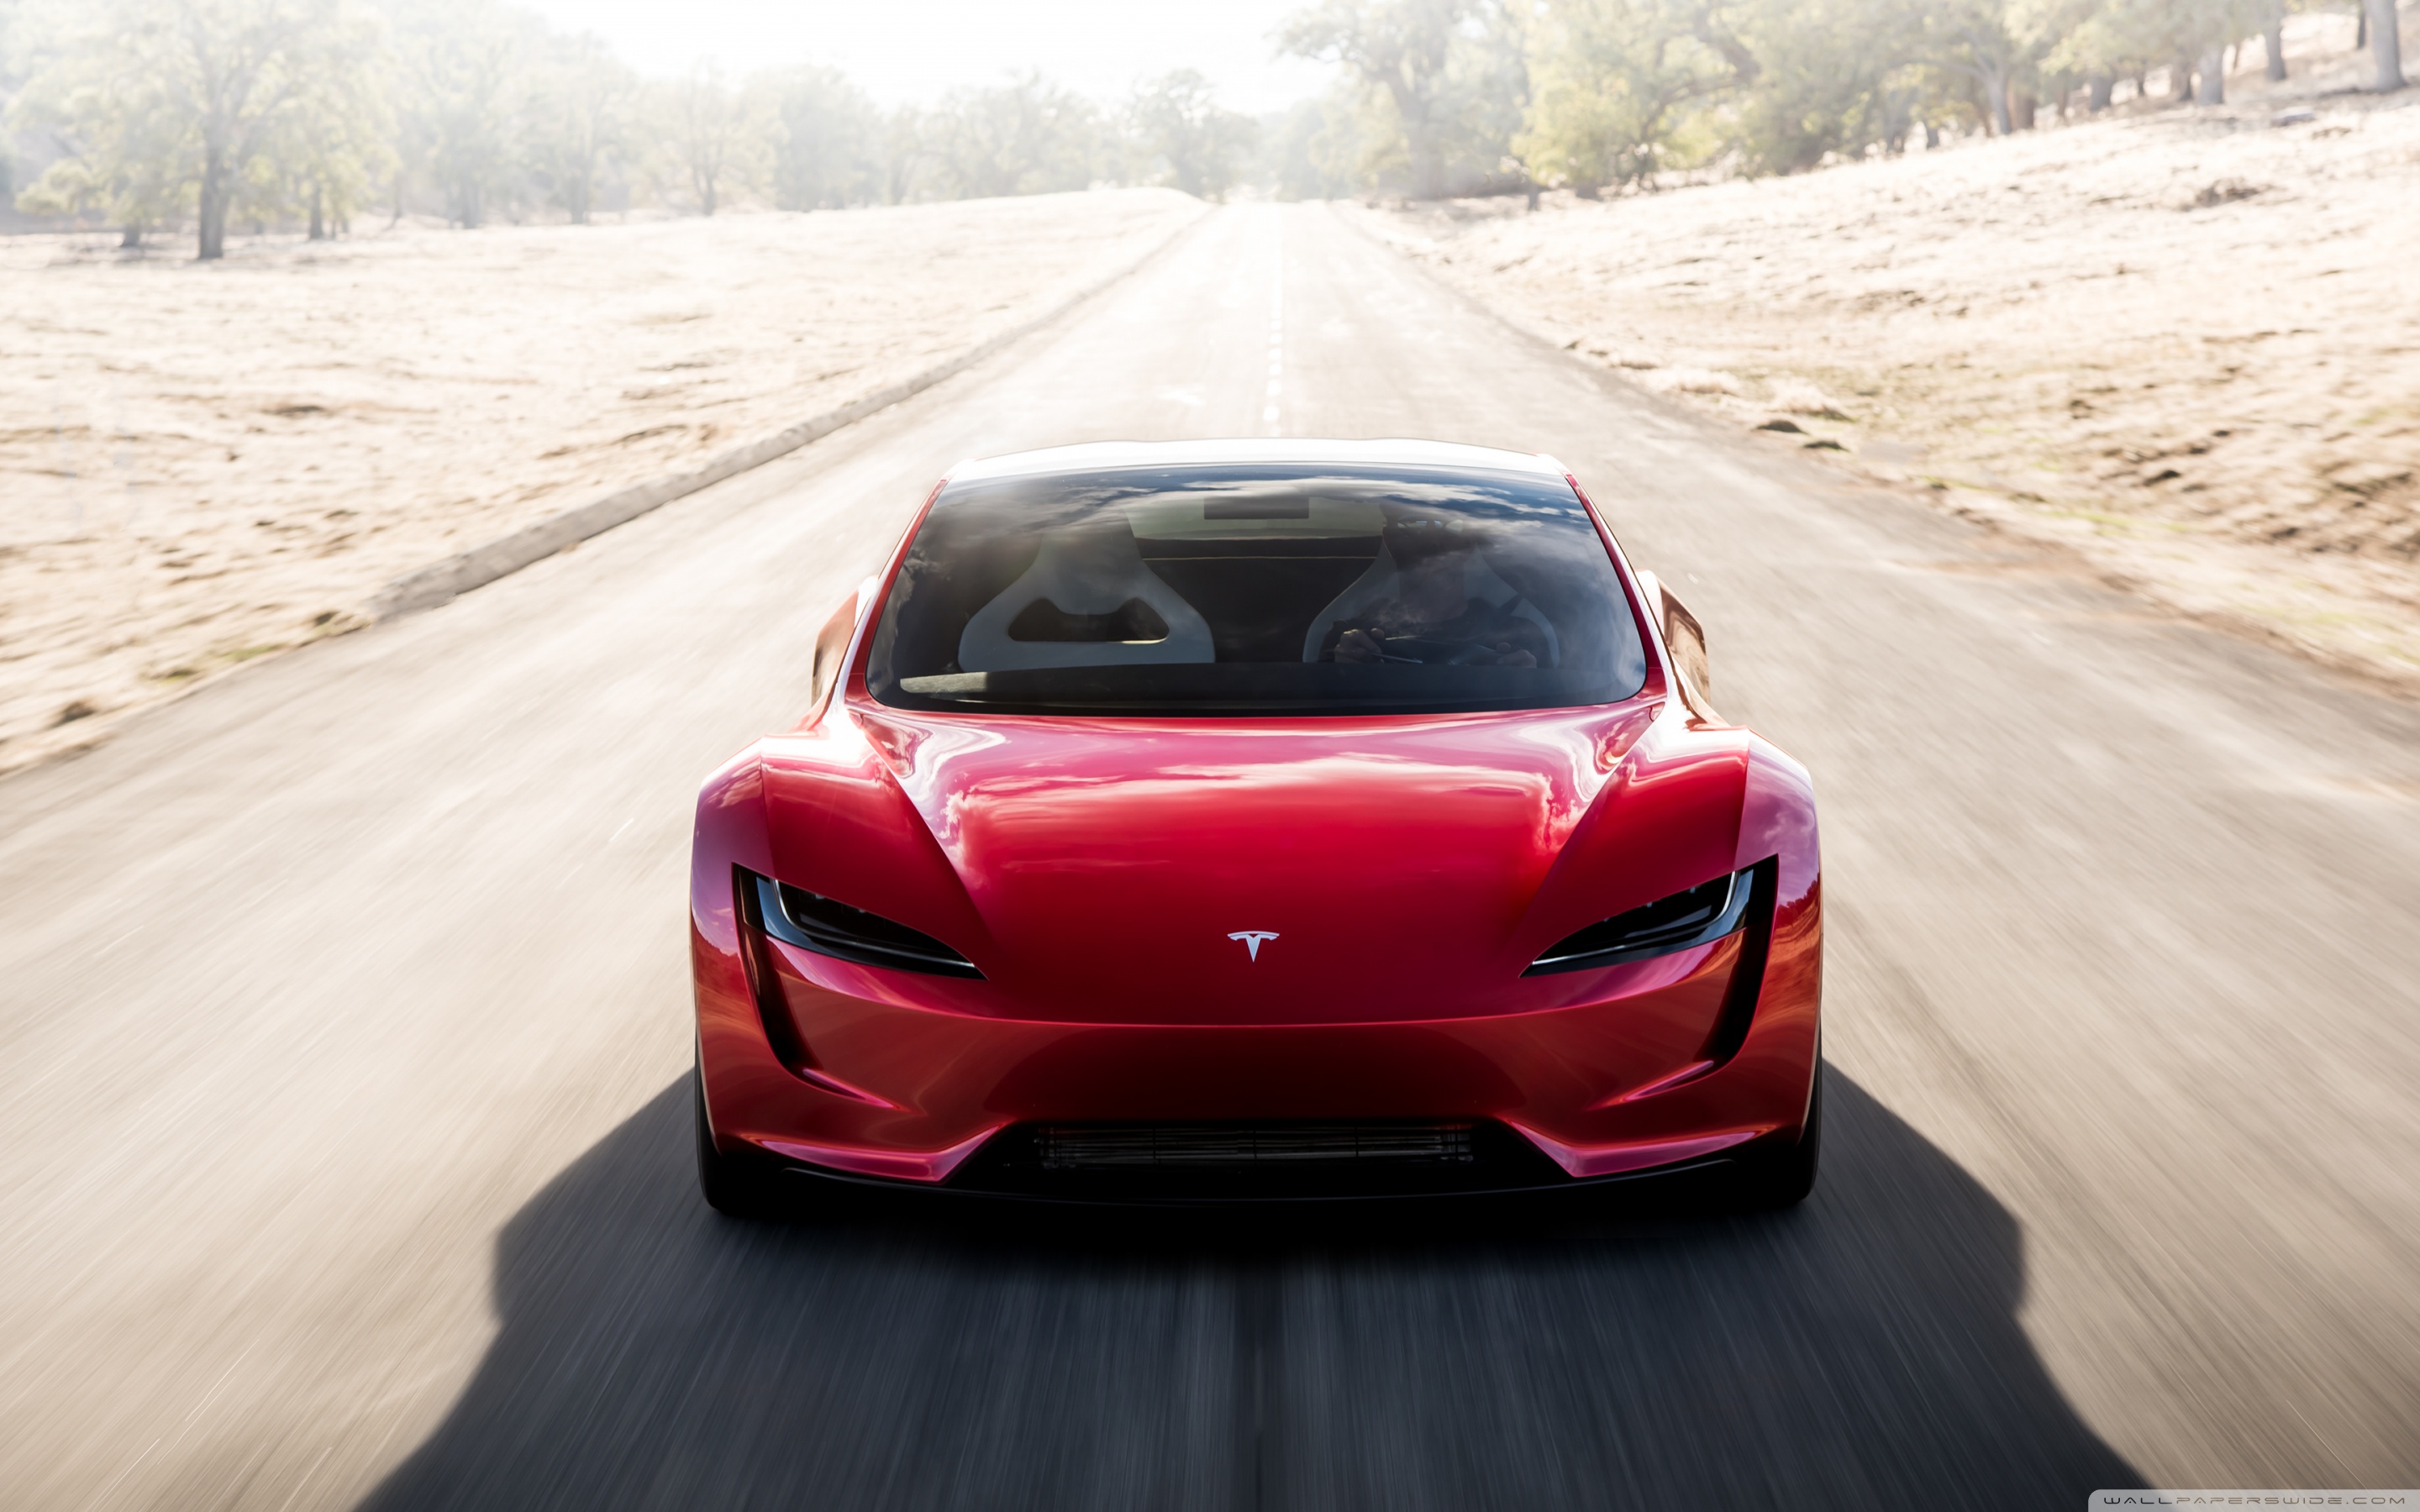 Black Tesla Model S Car Parking On A Road Side 4K wallpaper download